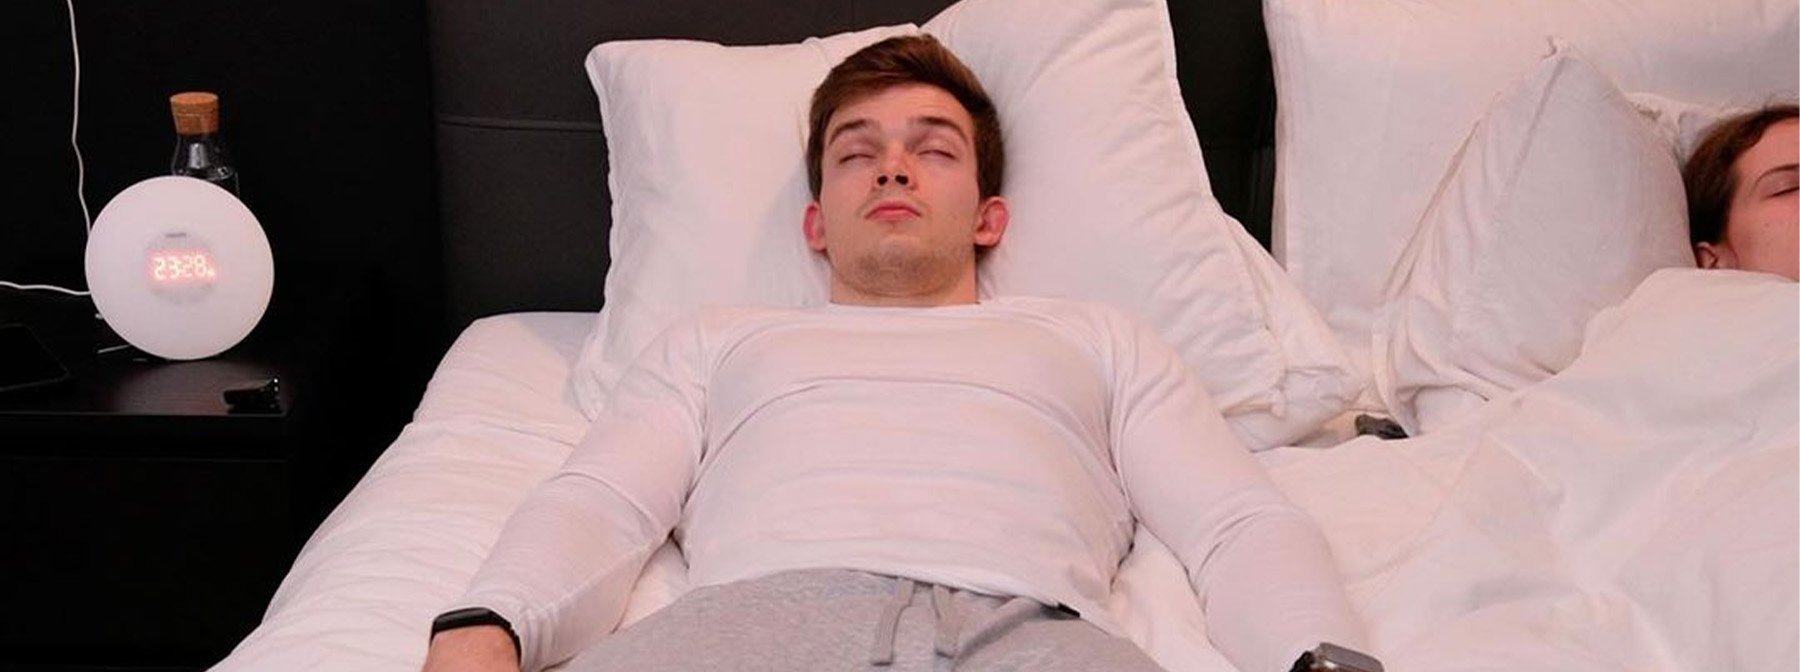 De 10 bedste søvnmetoder afprøvet og testet